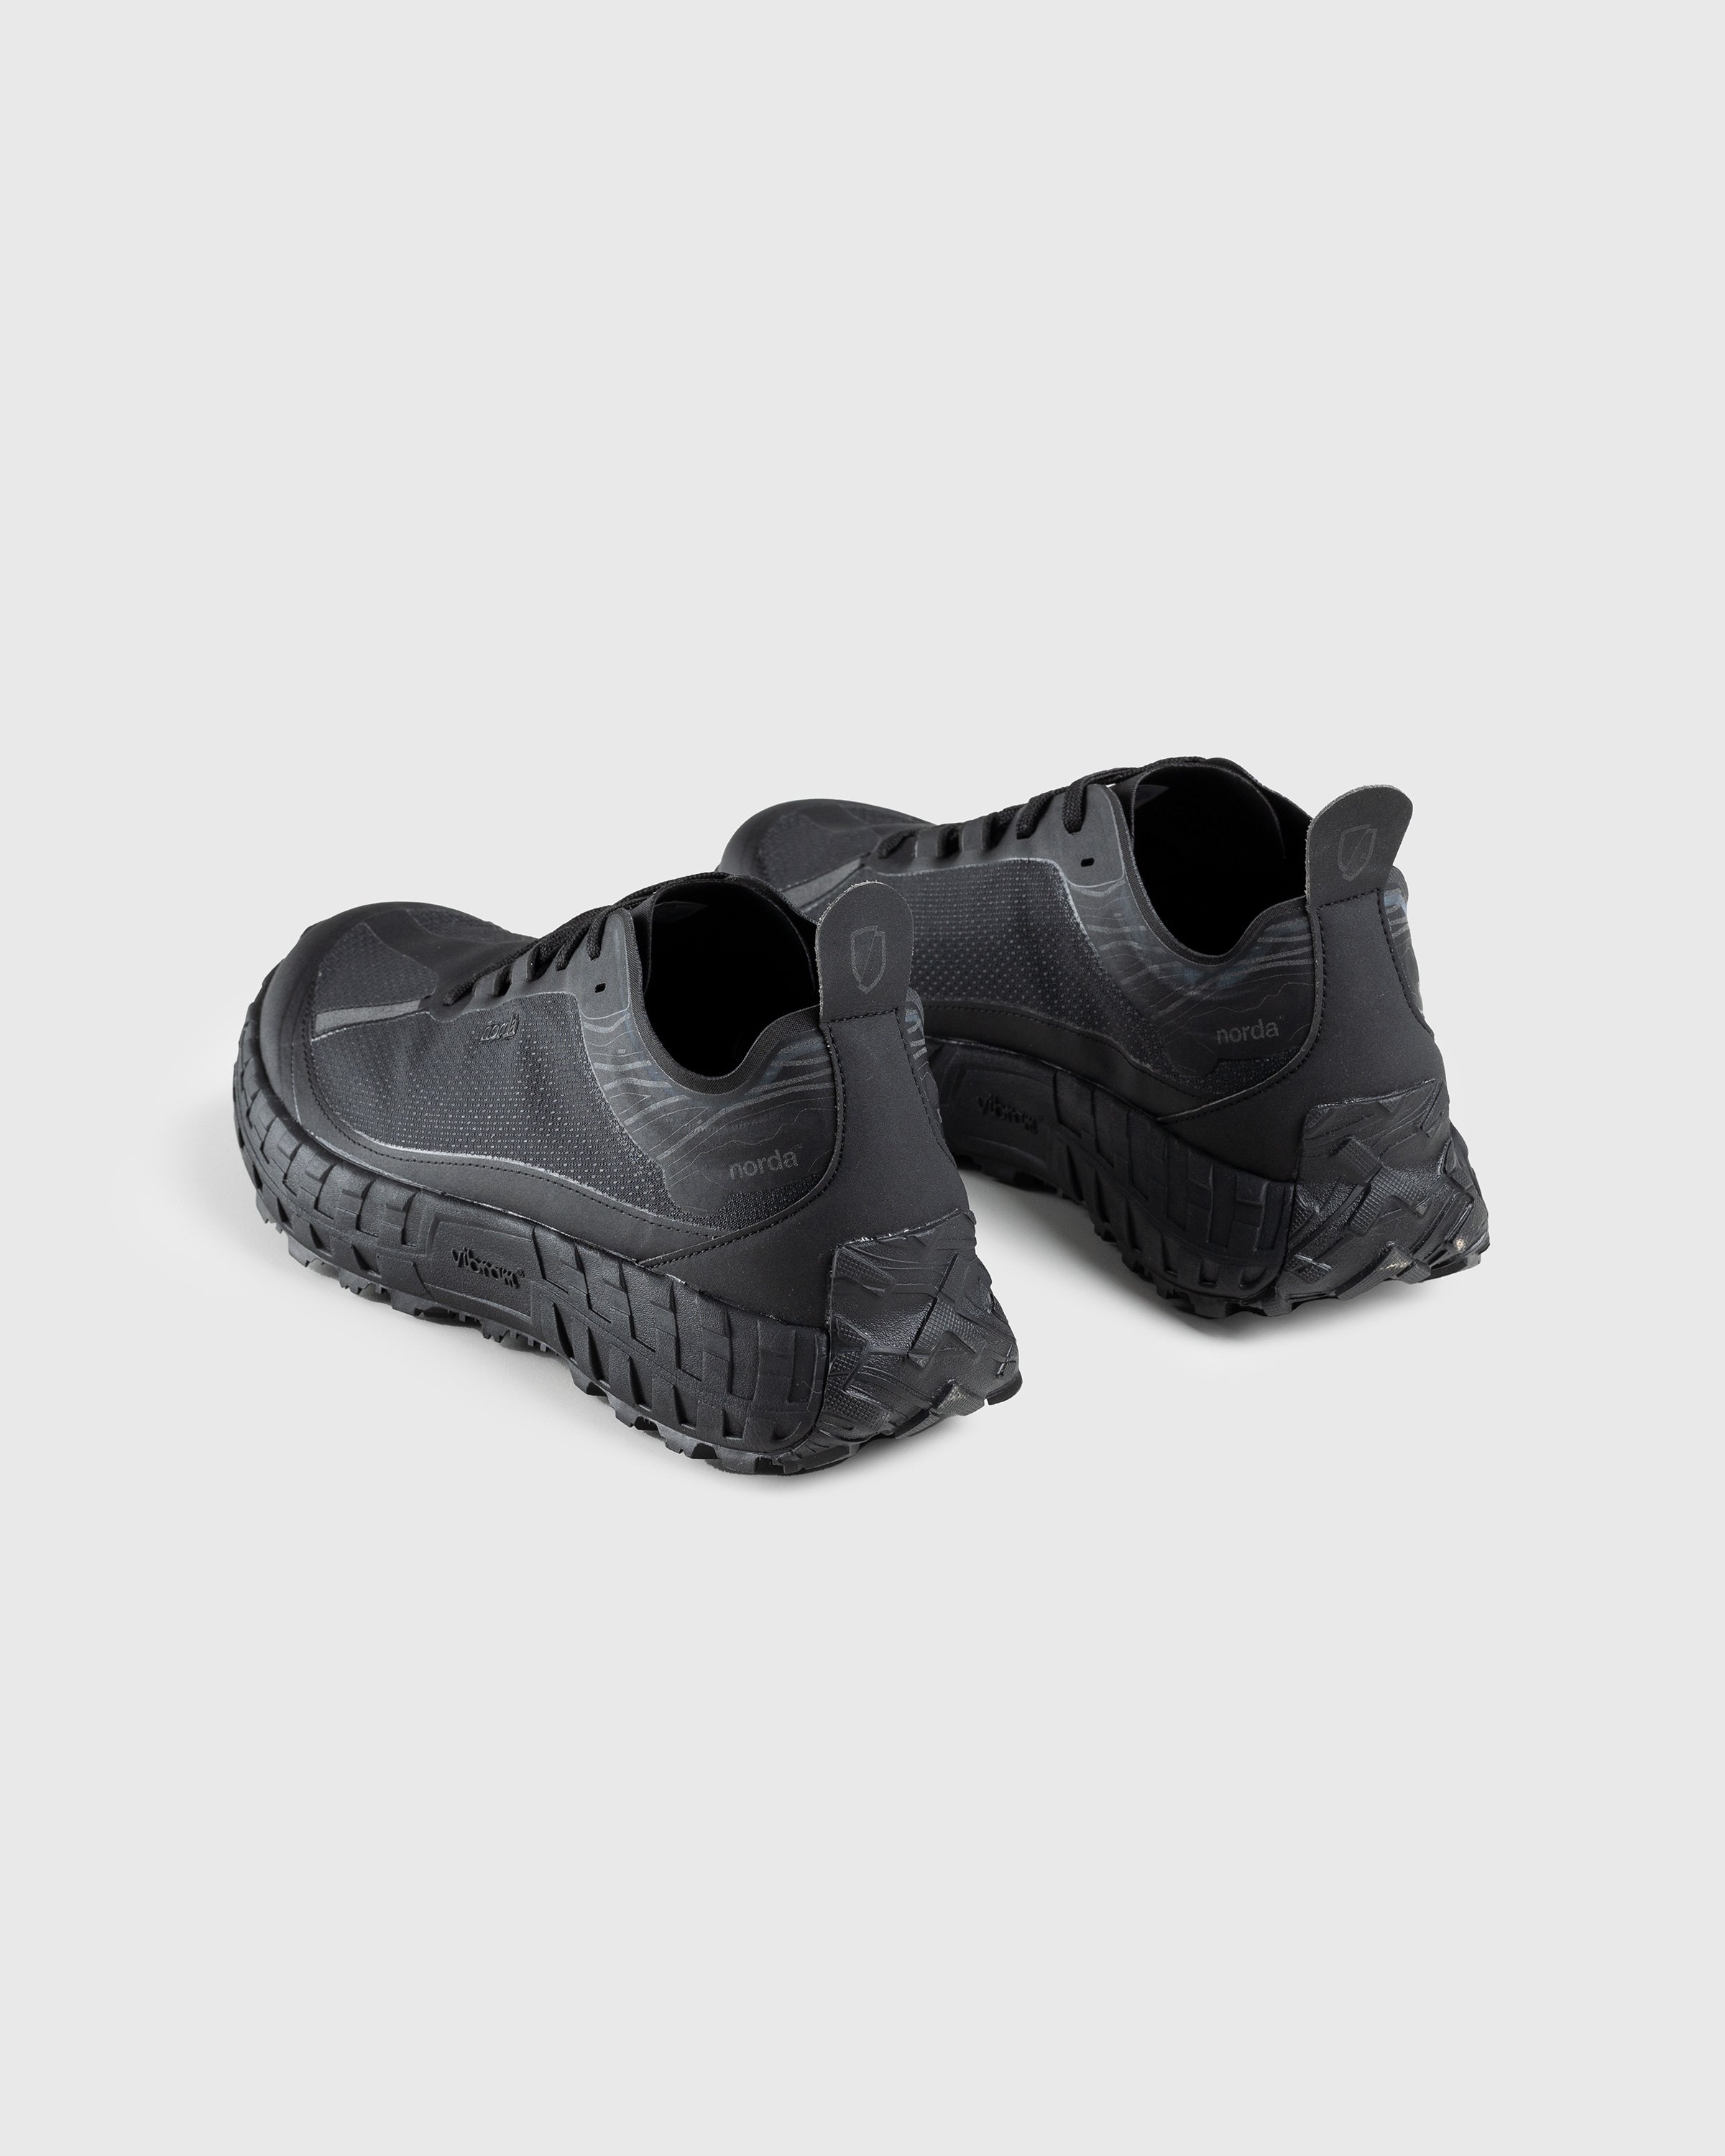 Norda - 001 M Stealth Black - Footwear - Black - Image 4